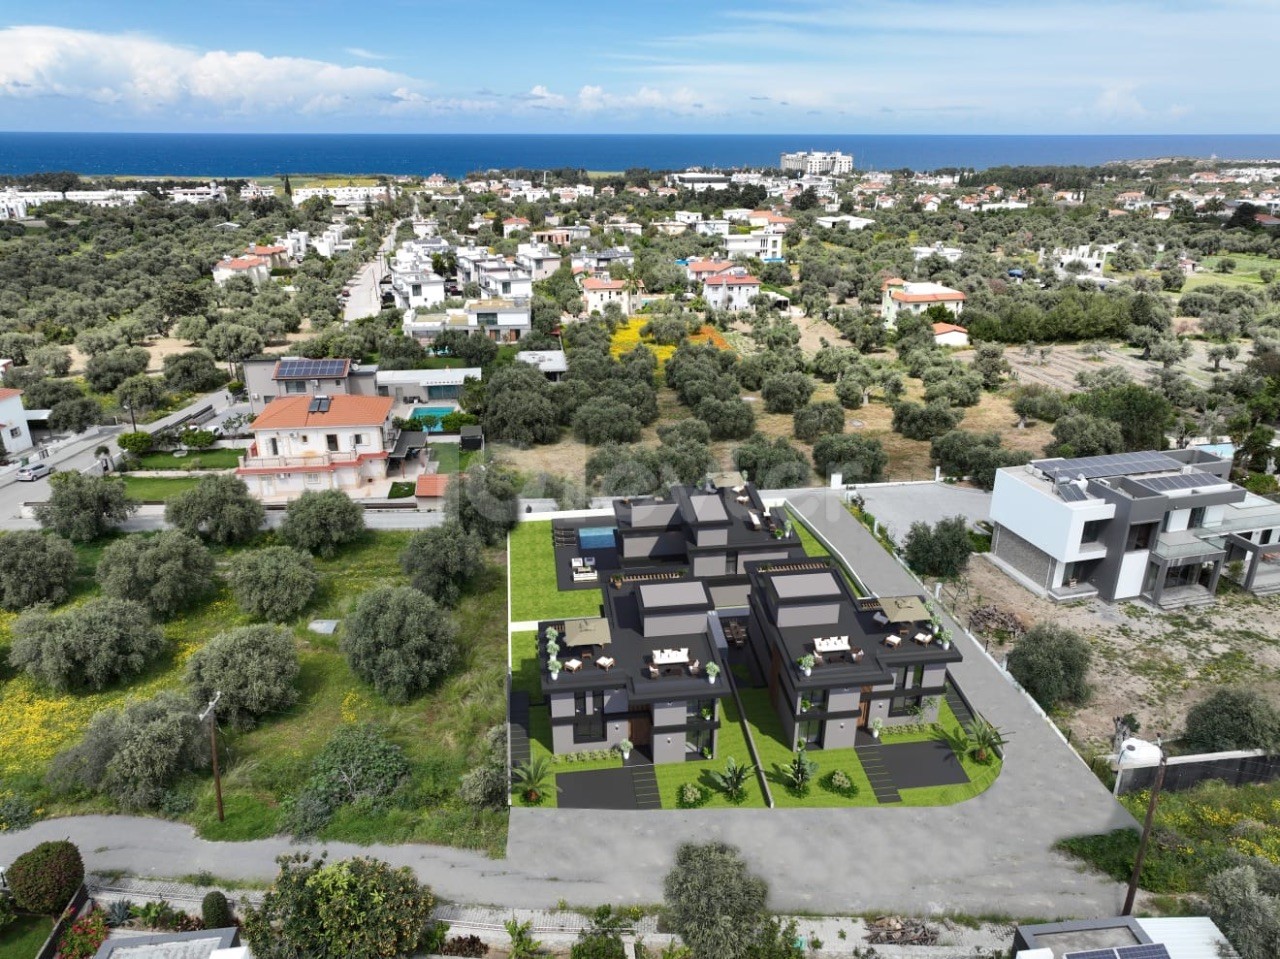 زمین 2000 متری برای فروش در Gİrne/Ozanköy با پروژه 3 ویلا با منظره کوه و دریا با مجوزهای پولی..0533 859 21 66